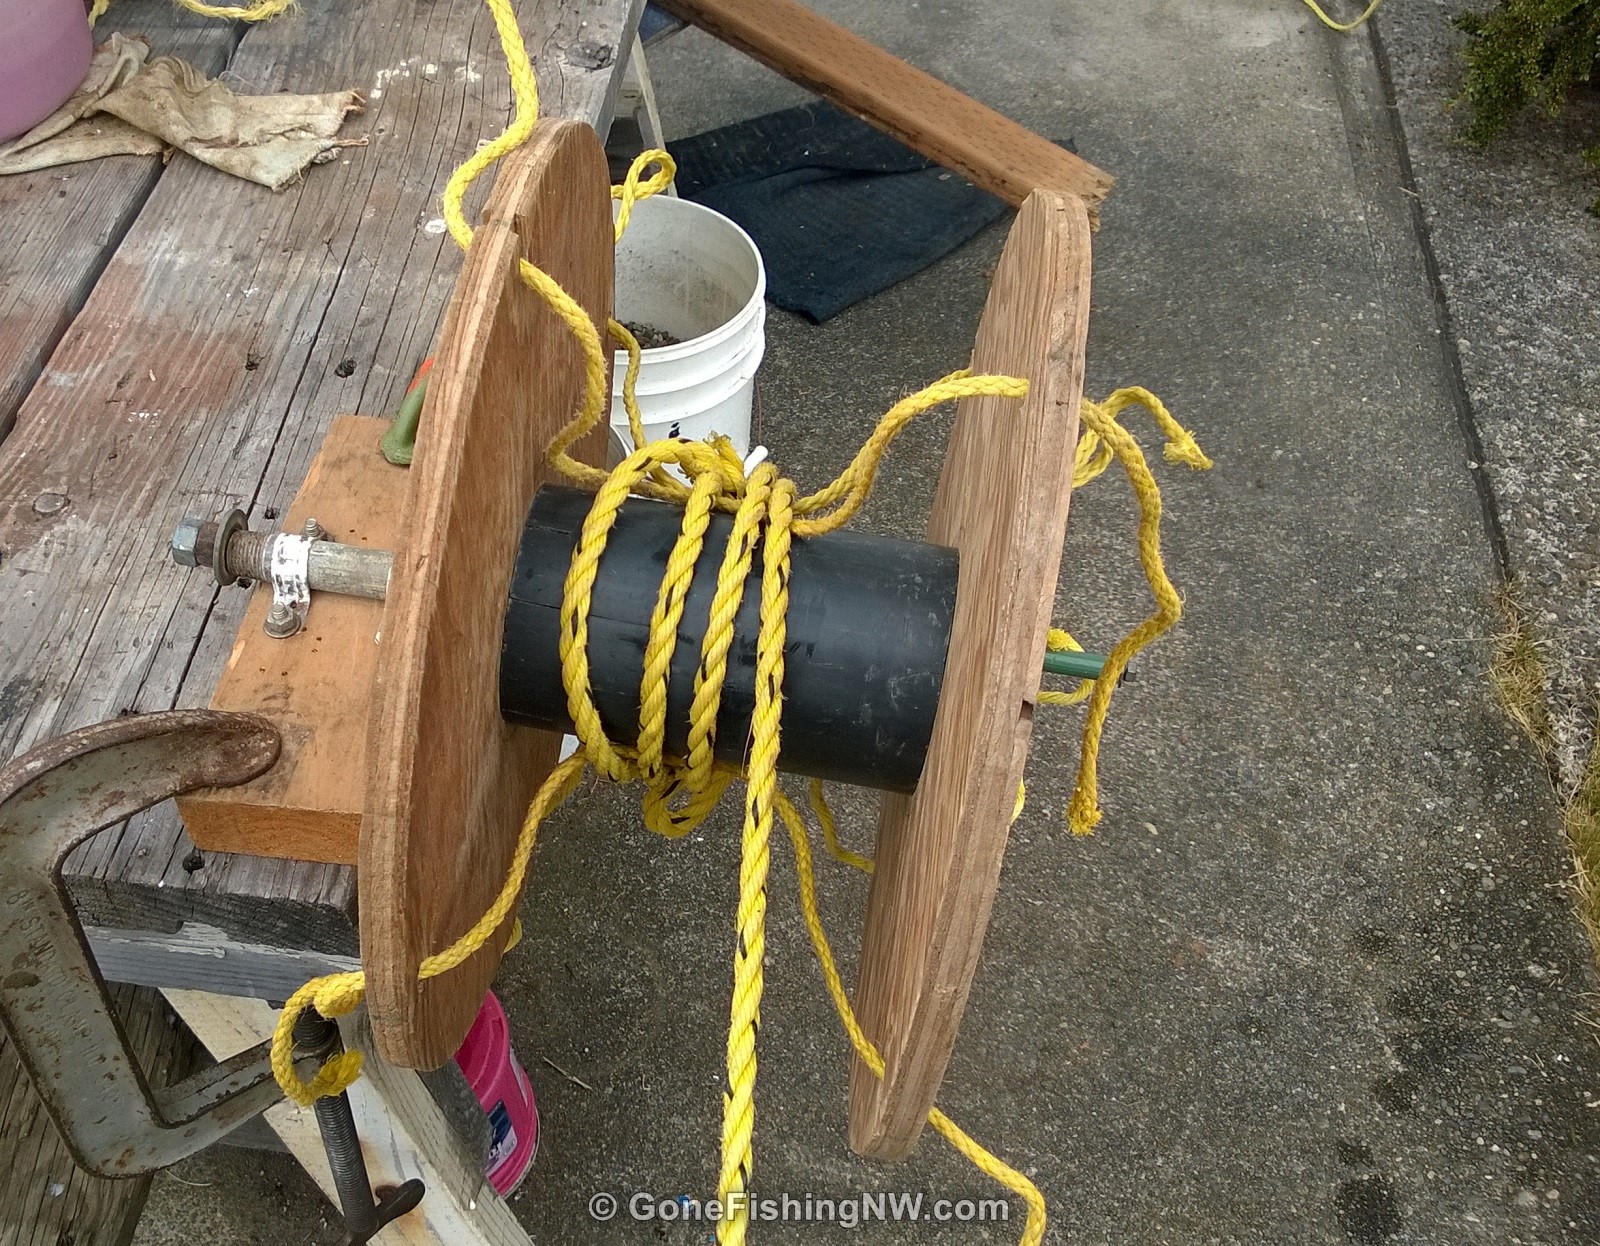 Pacific Northwest - Shrimp pots, ropes, floats etc